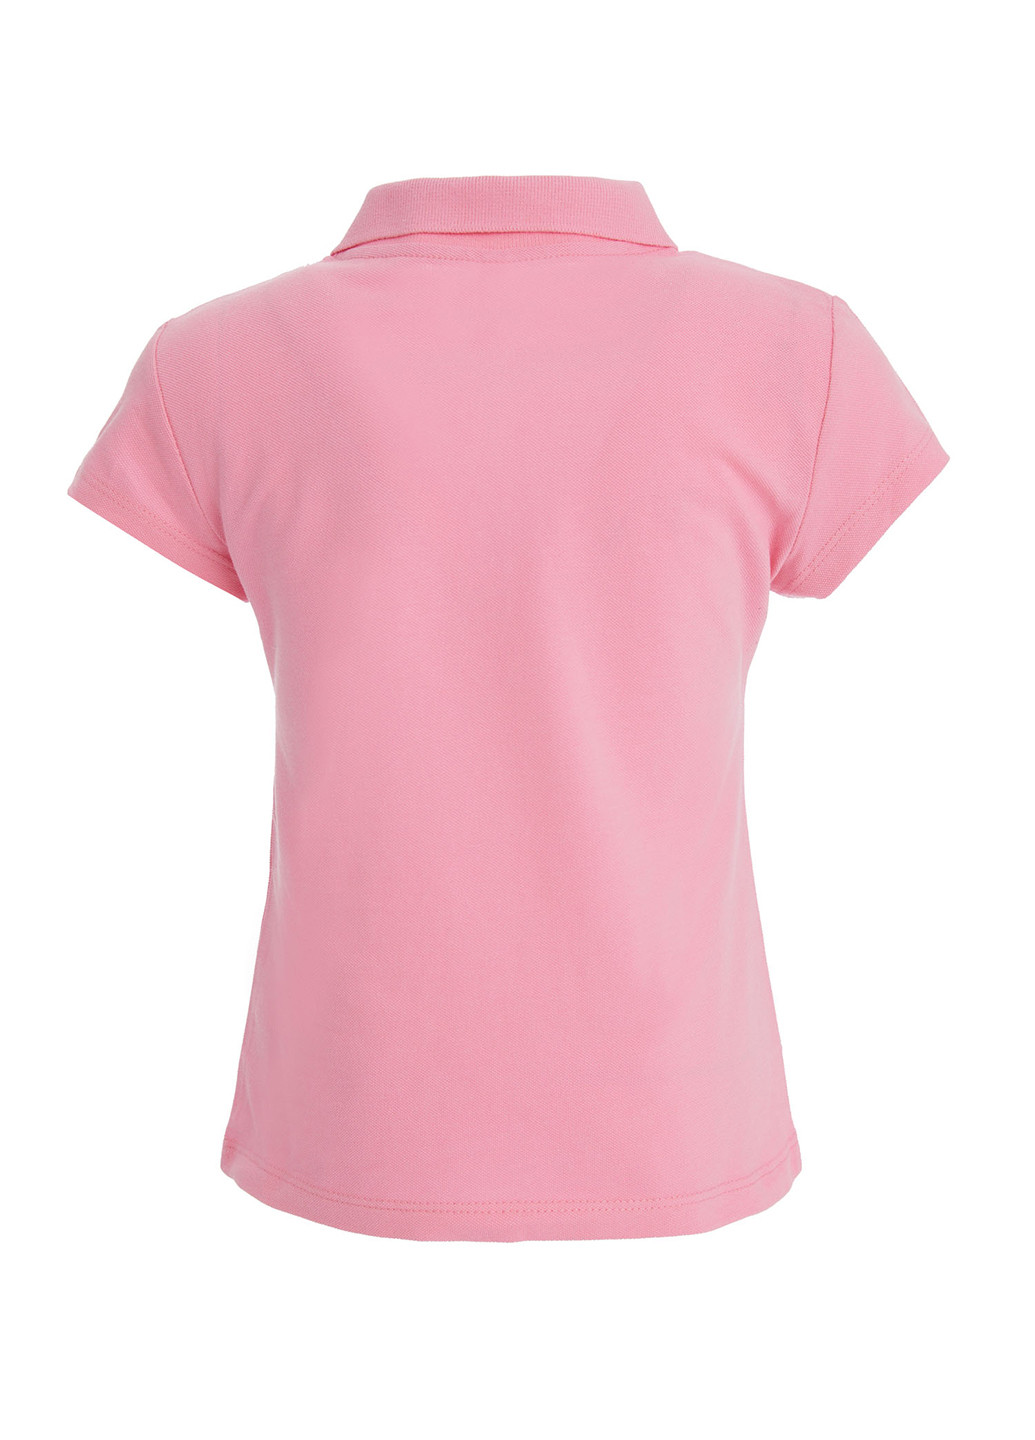 Розовая детская футболка-поло для девочки DeFacto